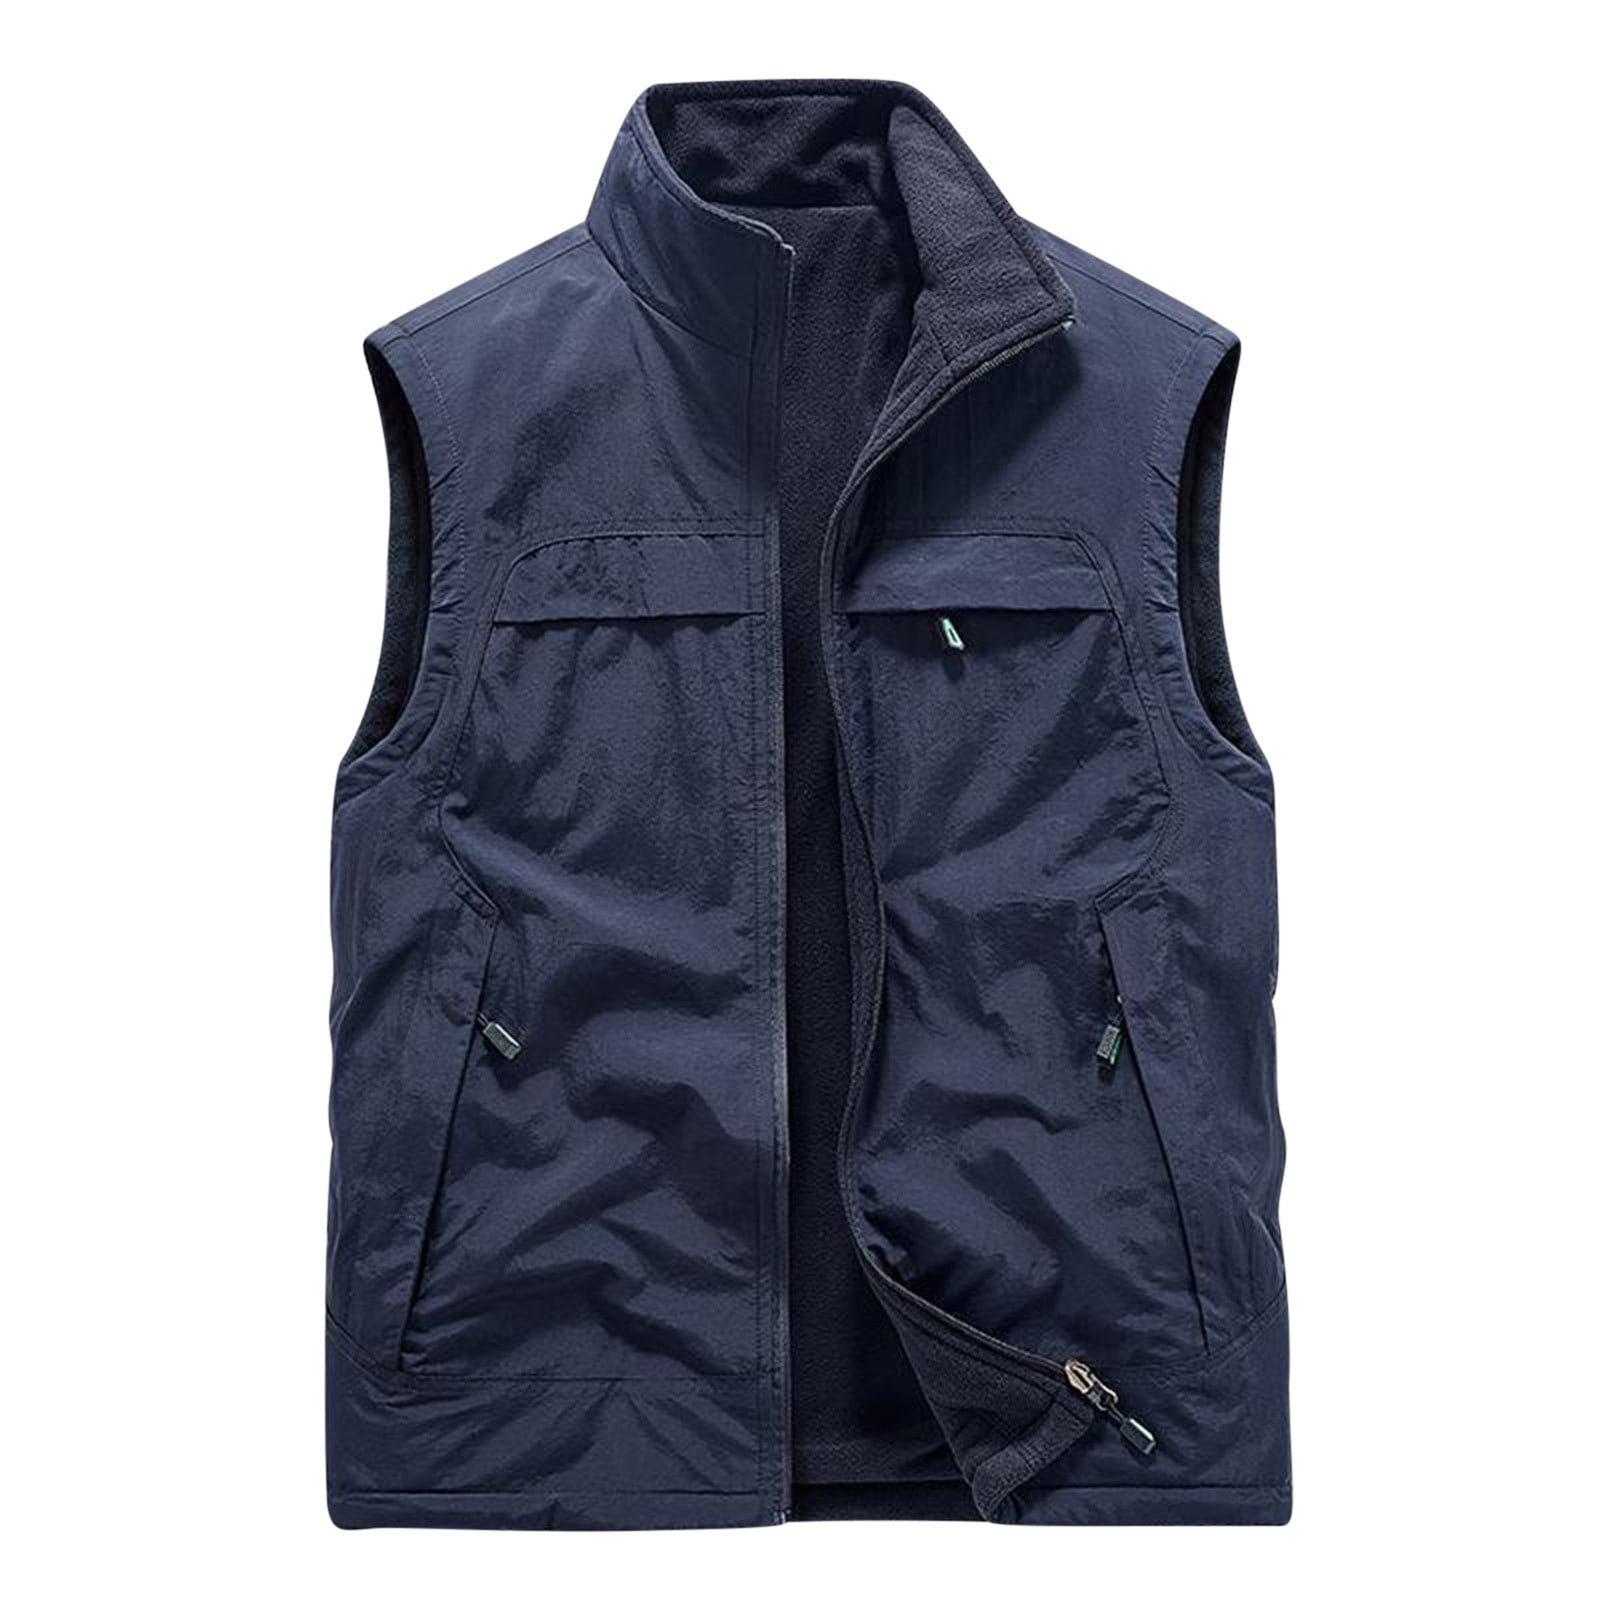 WREESH Mens Fleece Lined Cargo Vest Stand Collar Zipper Work Vest